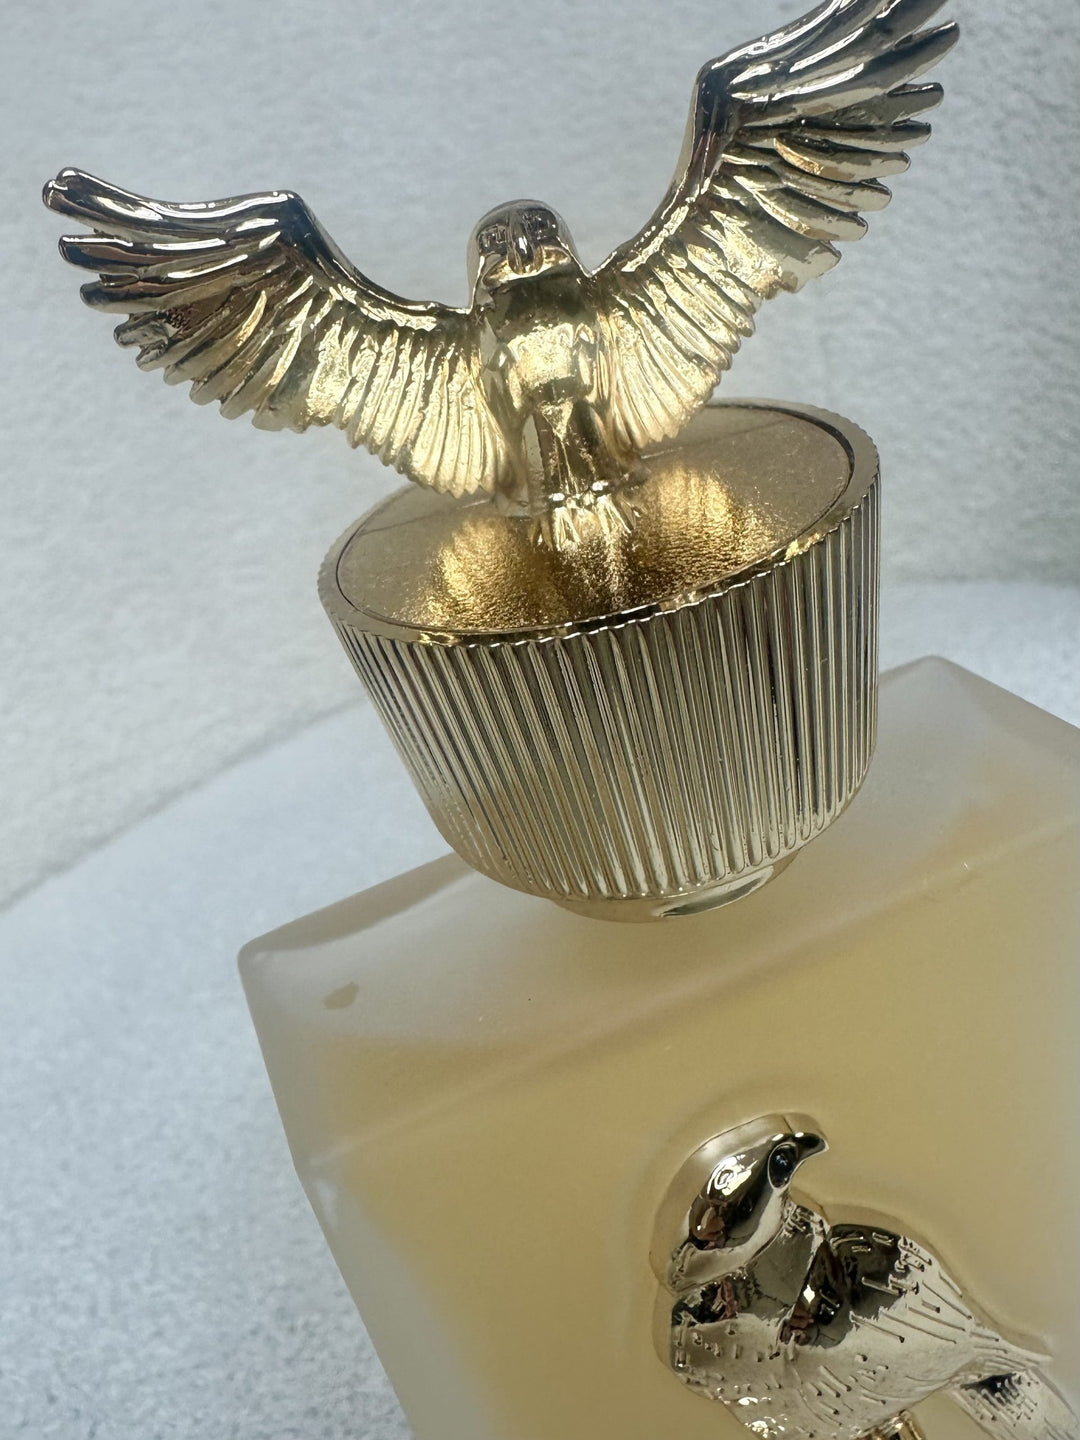 Shaheen Gold EDP Perfum